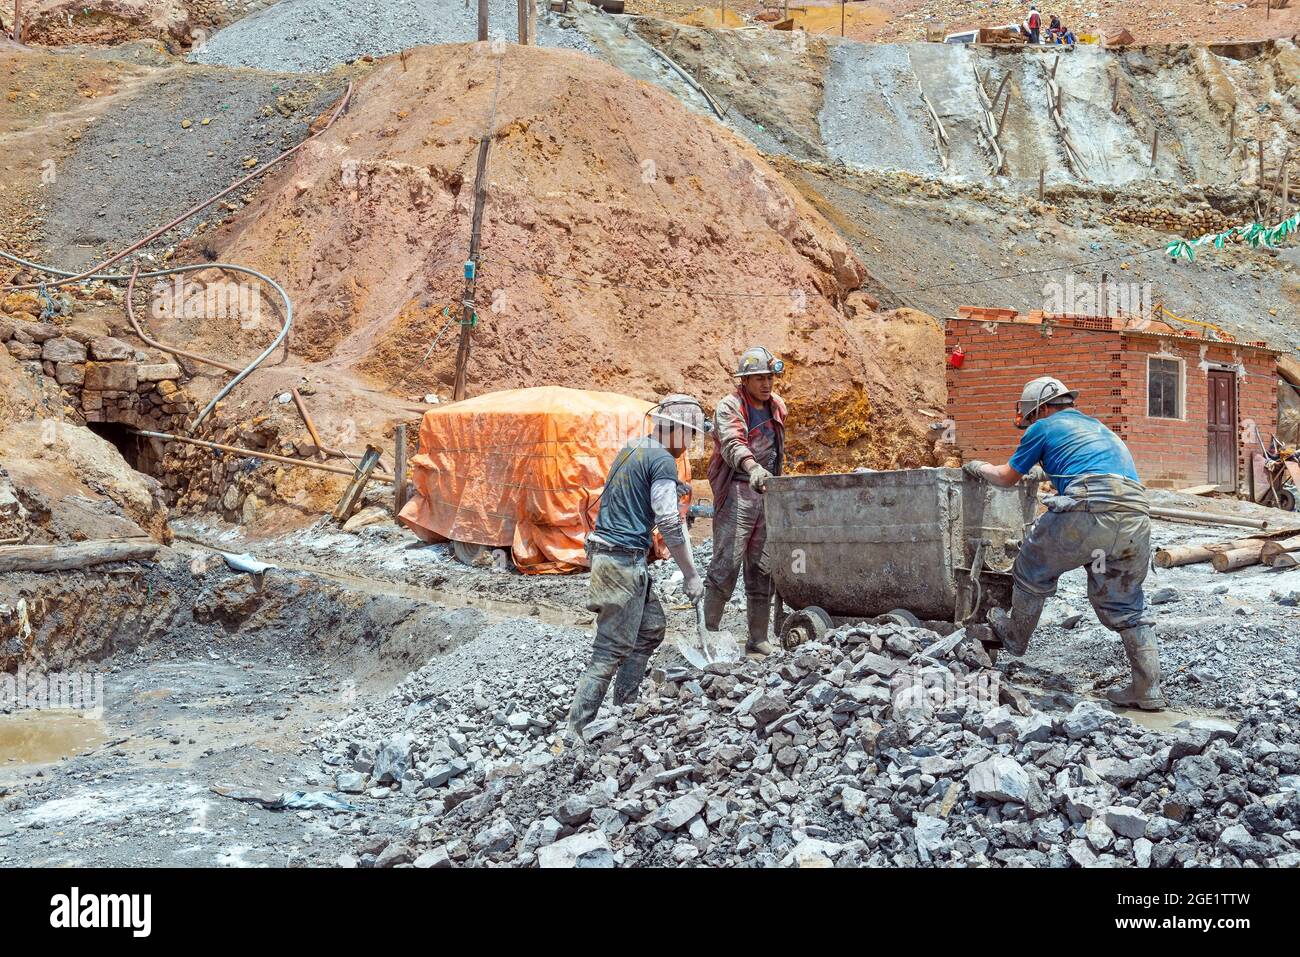 Bolivianische Bergarbeiter der Silbermine Potosi bei der Arbeit unter rauen Bedingungen, Bolivien. Stockfoto